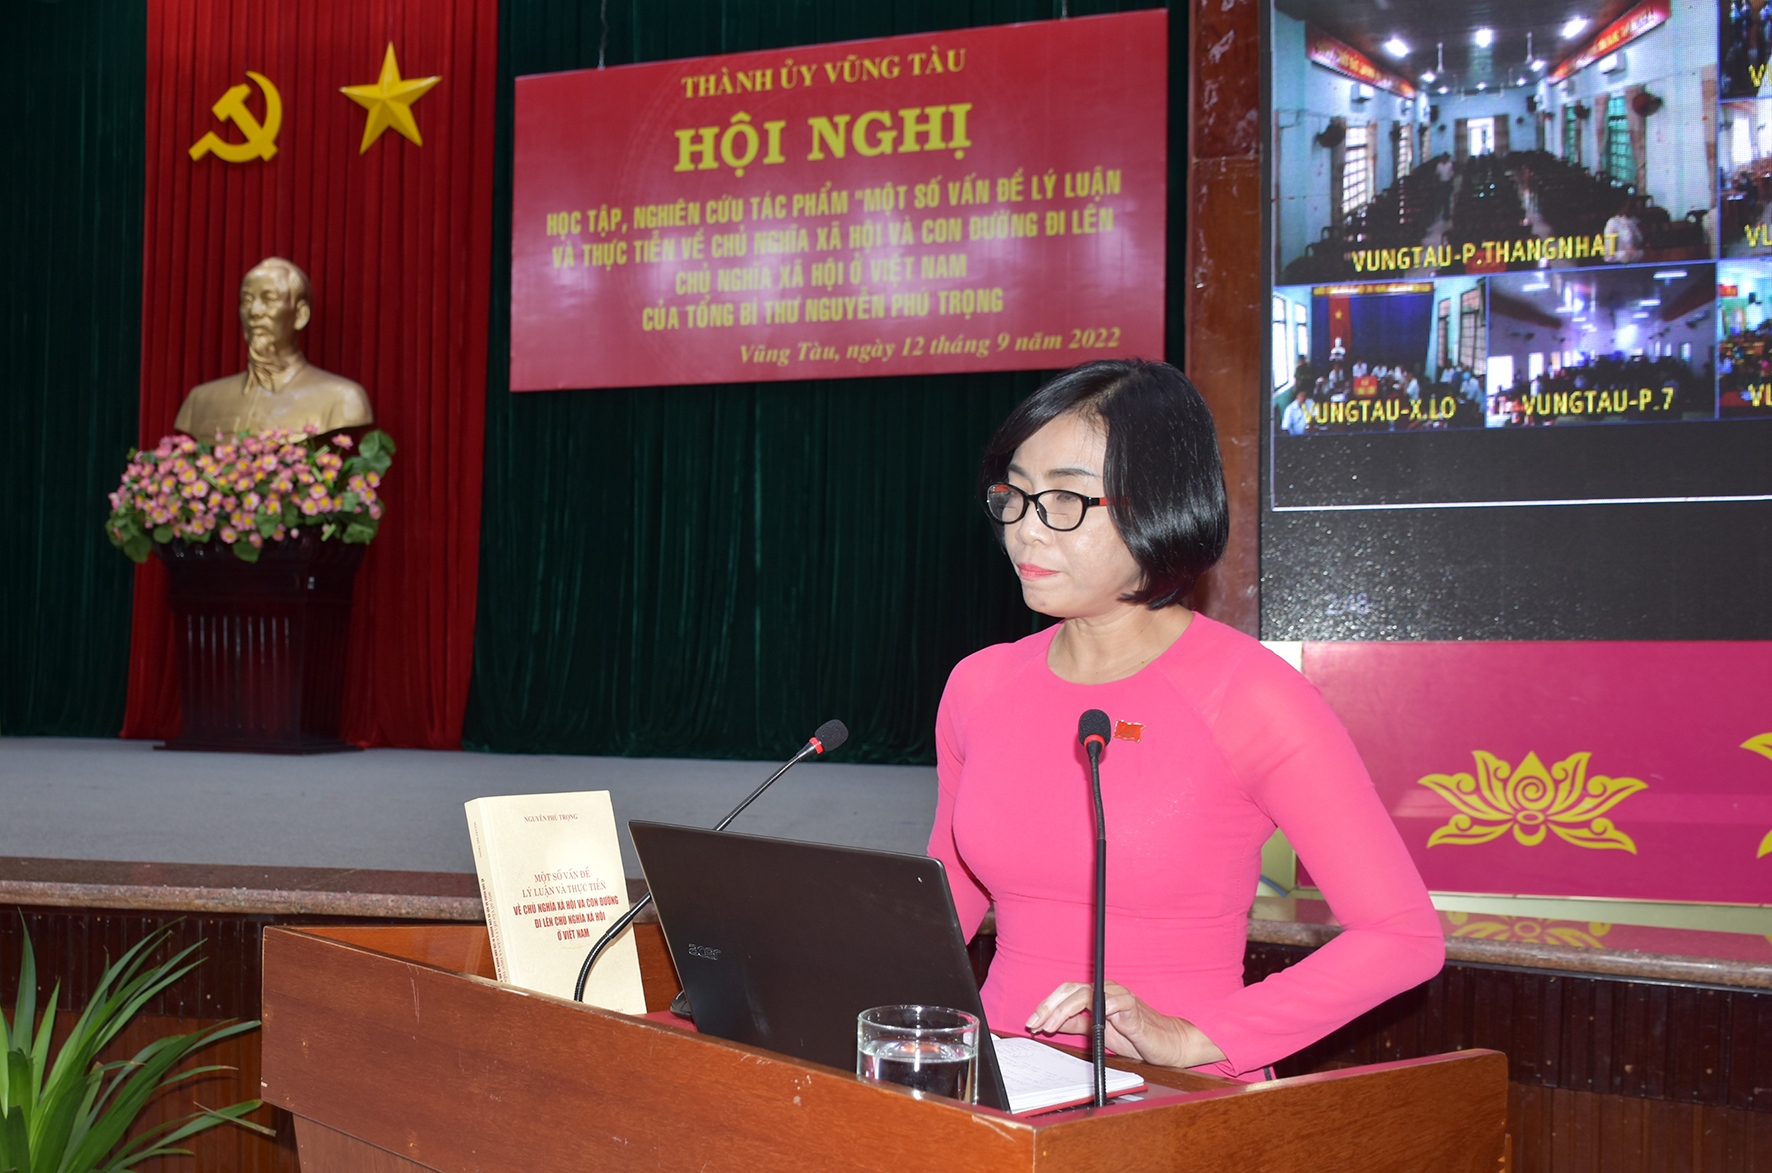 Phó Bí thư Thường trực Thành ủy Vũng Tàu Lê Thị Thanh Bình kết luận hội nghị.